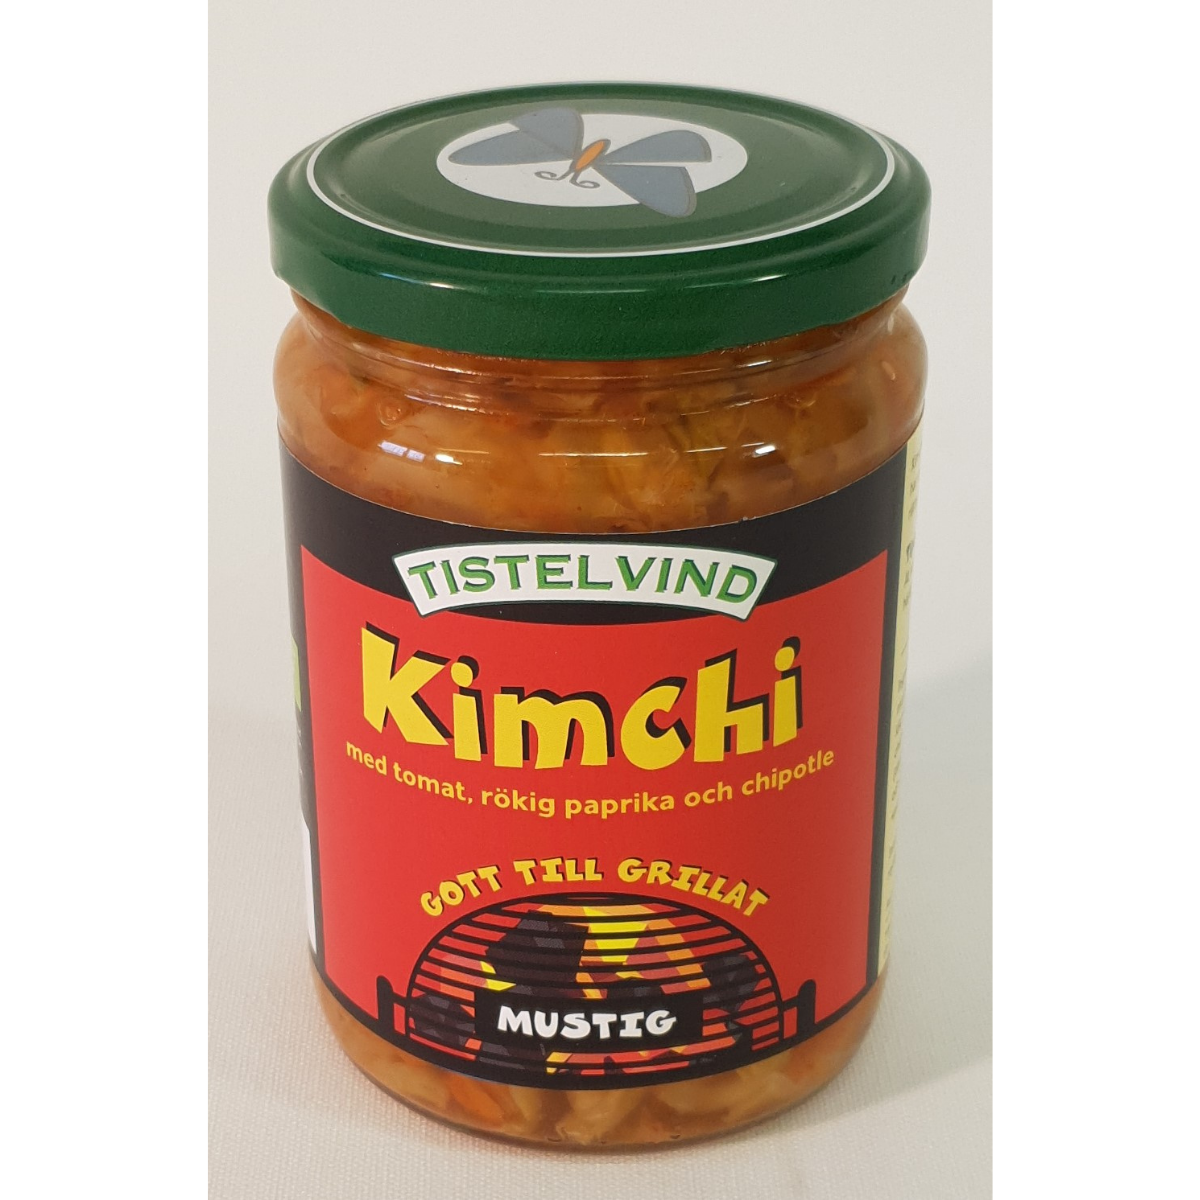 Tistelvind's Kimchi Grill, med tomat och rökig paprika'